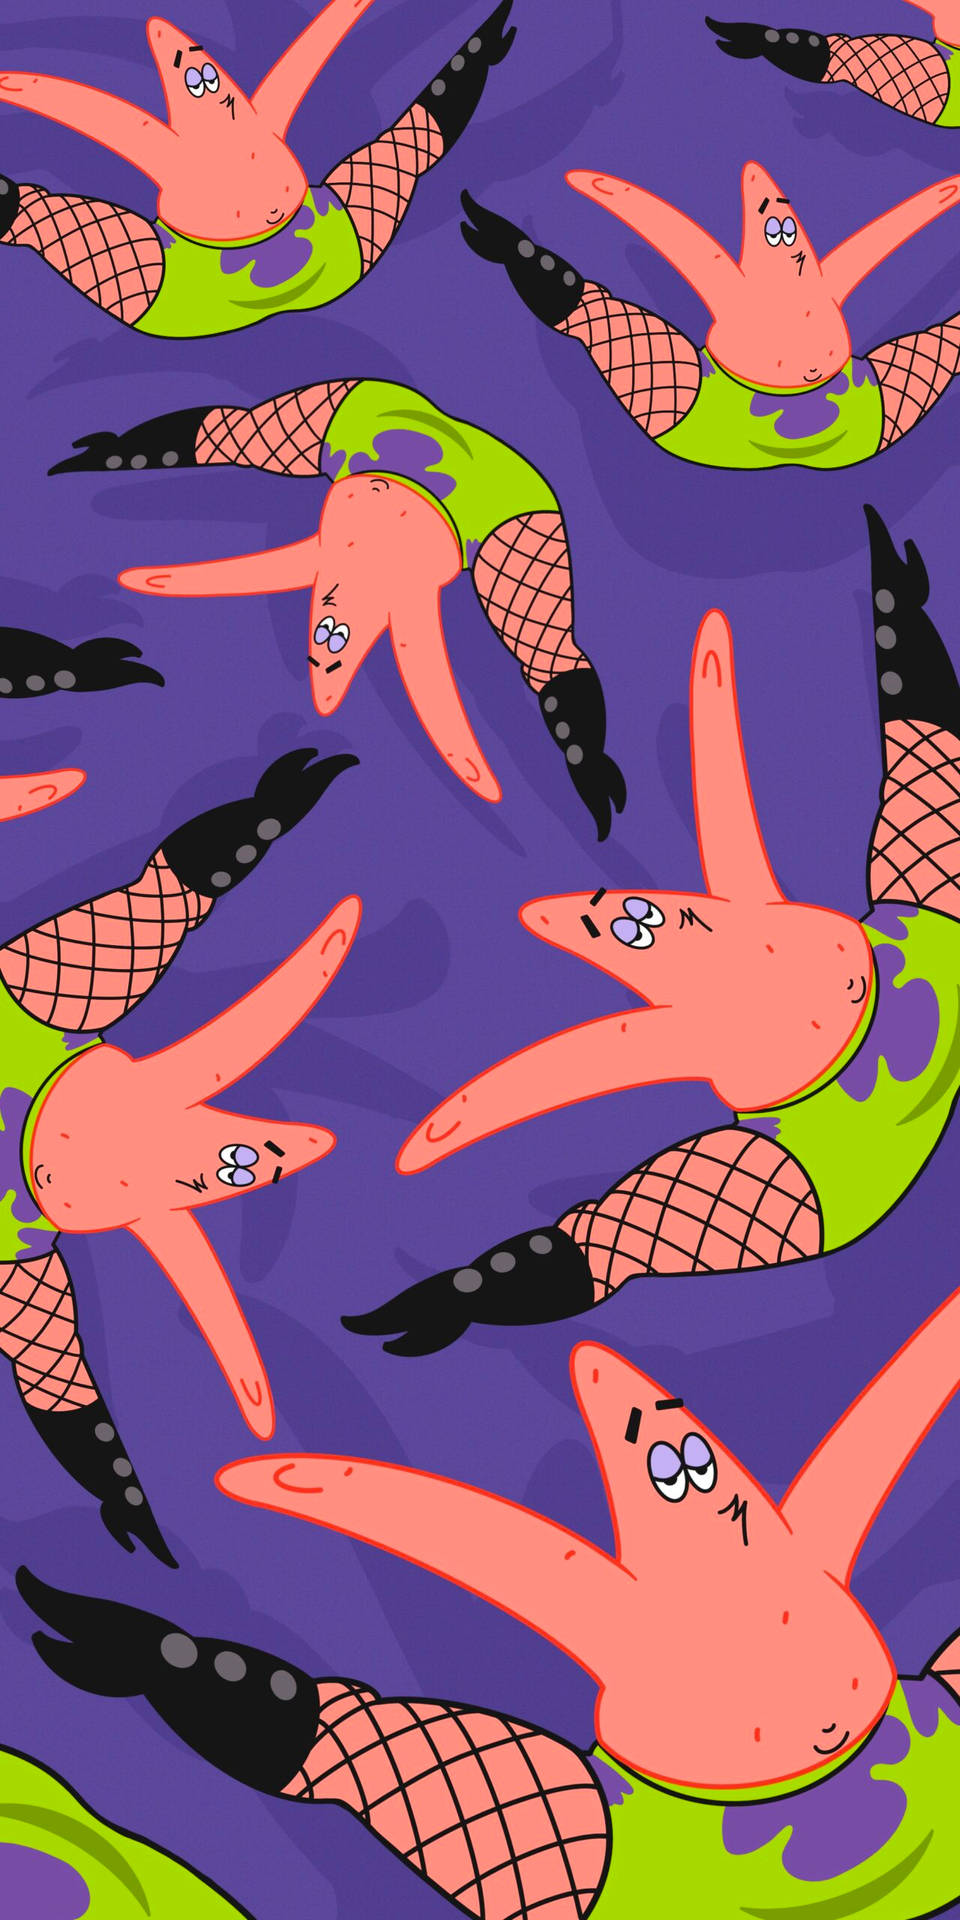 Patrick stjernefisk fanget i en surreal situation Wallpaper